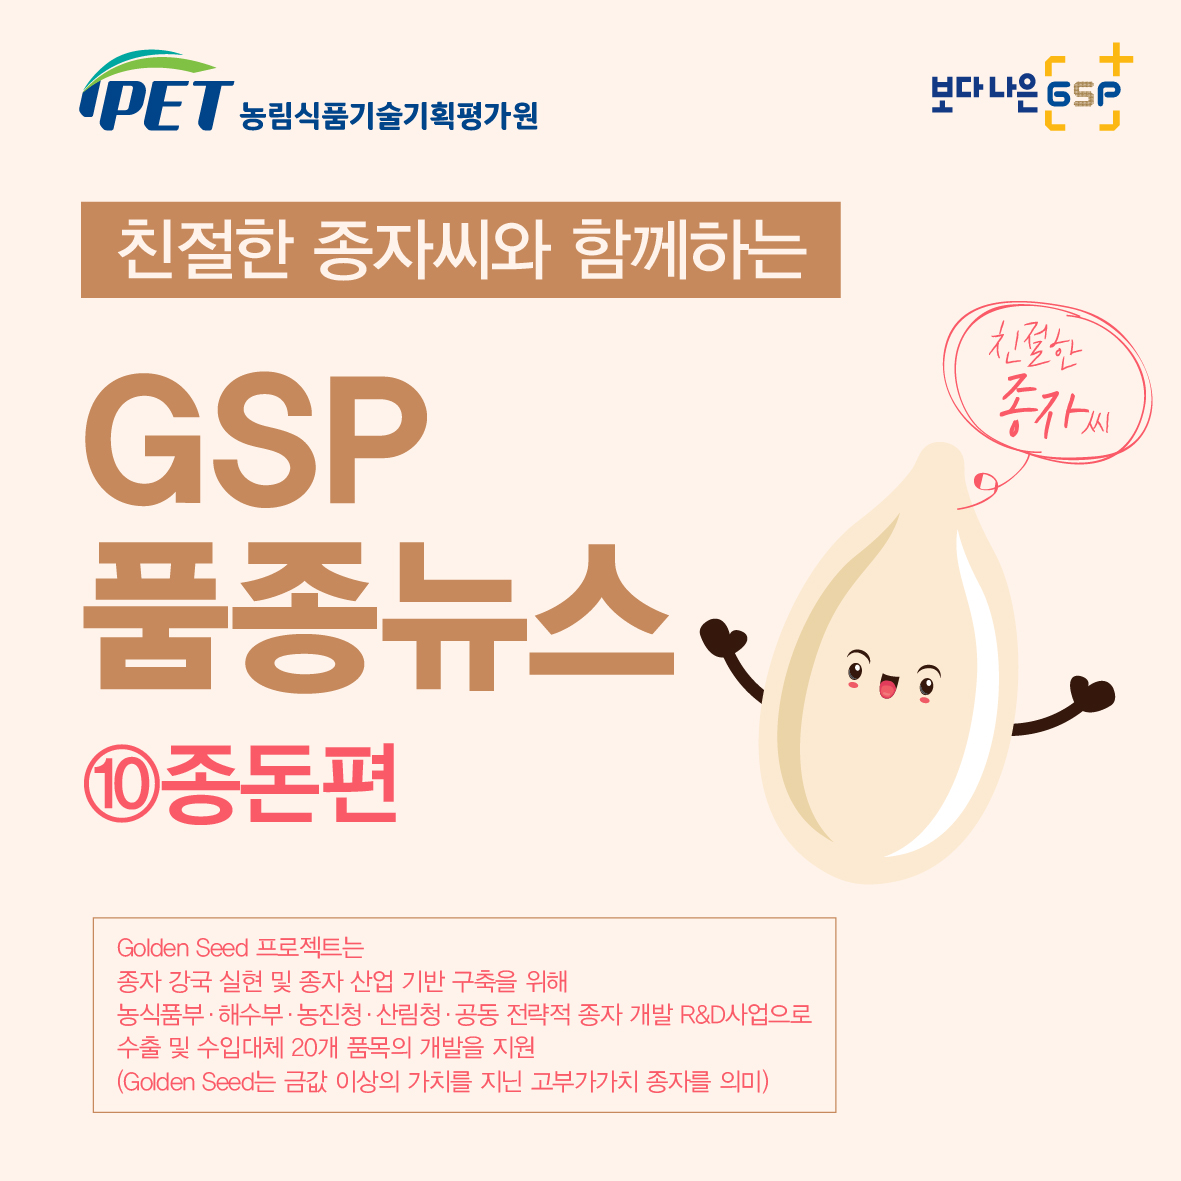 친절한 종자씨와 함께하는 GSP 품종뉴스 - 종돈편 카드뉴스_종돈편-01.jpg